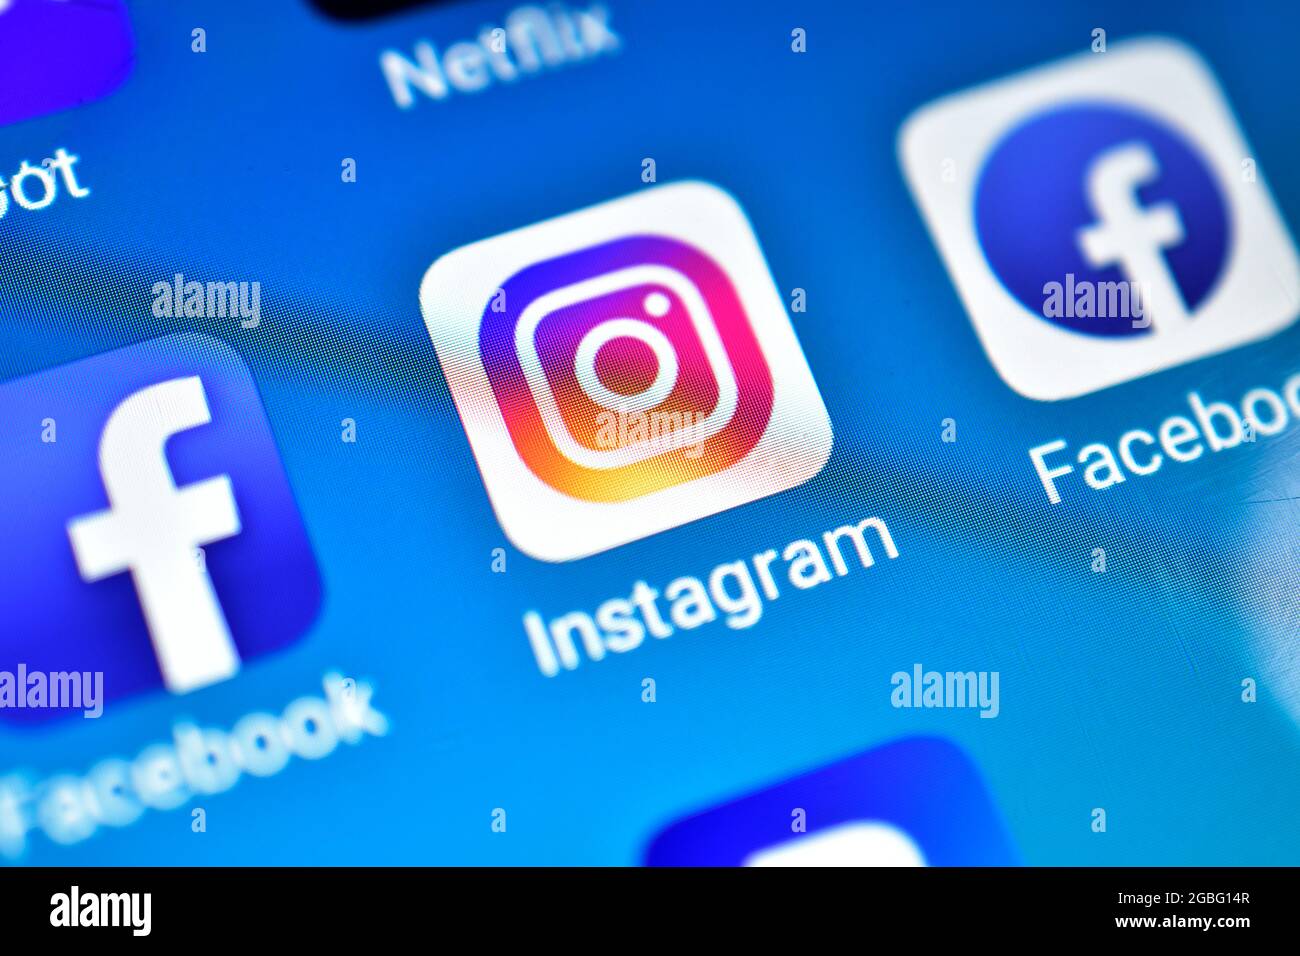 DELHI, INDE - 27 MAI 2018 : gros plan de l'icône Instagram sur le smartphone Banque D'Images